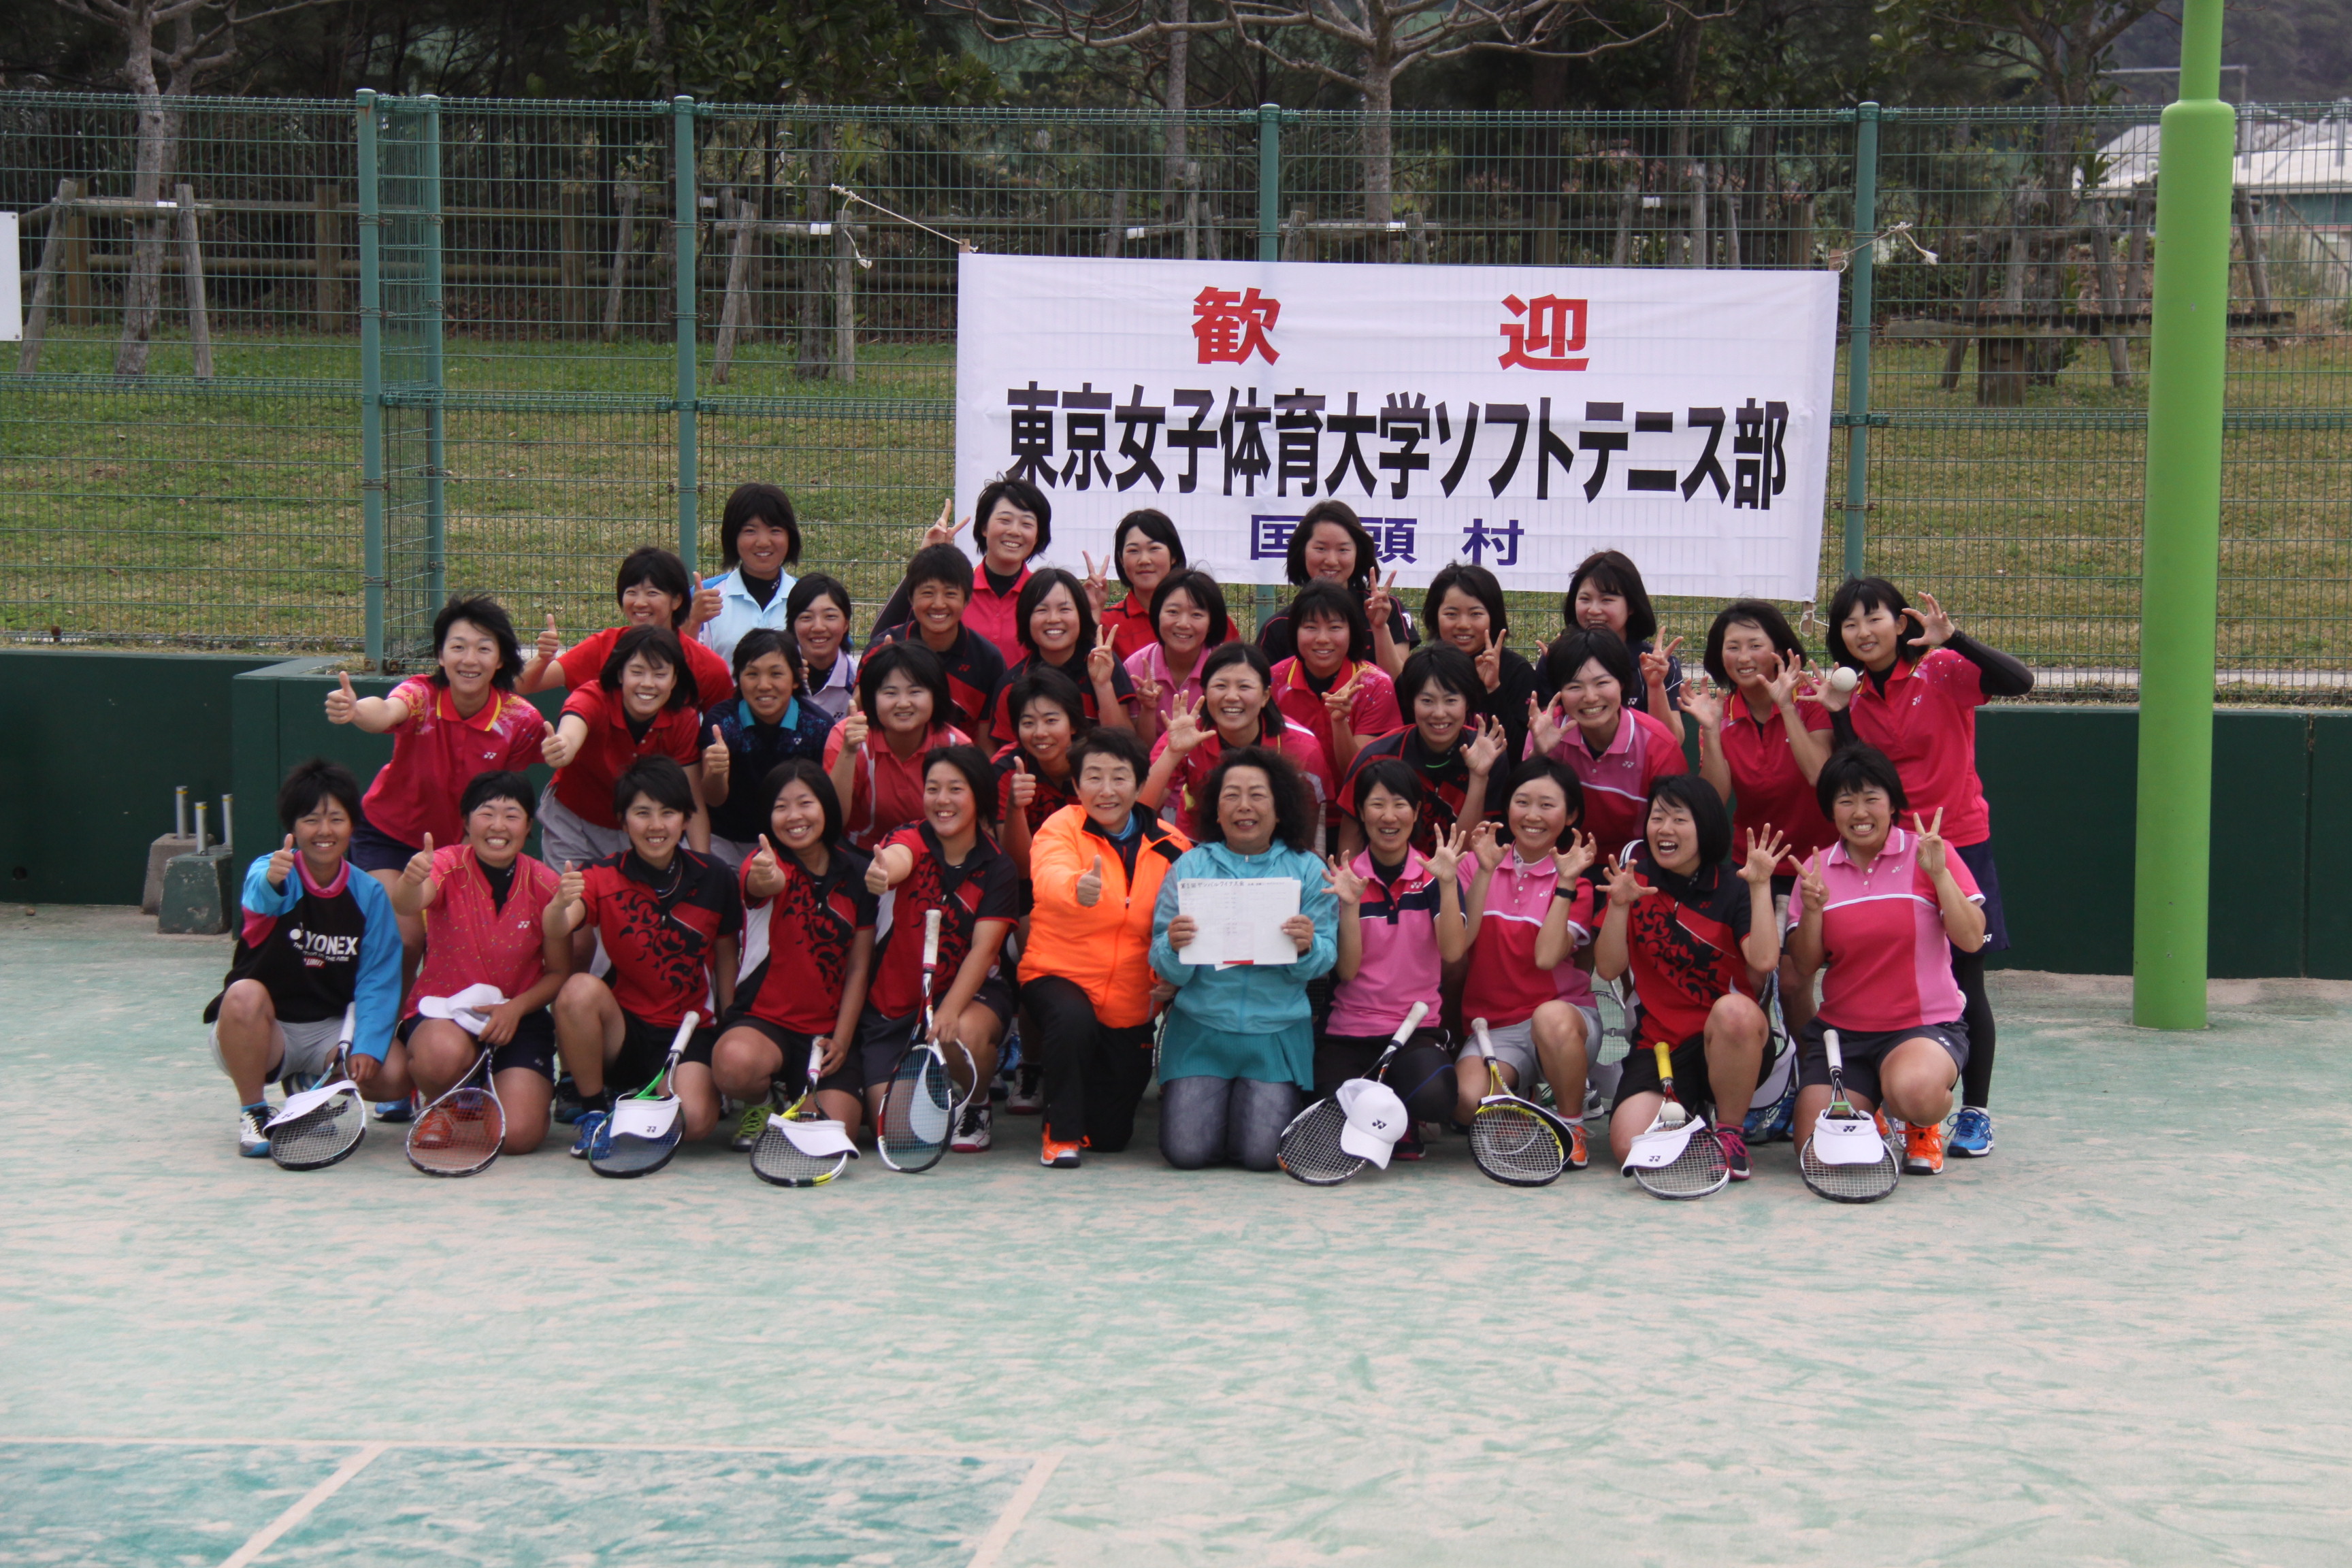 チバリョ 東京女子体育大学ソフトテニス部 国頭 くにがみ 合宿 国頭村